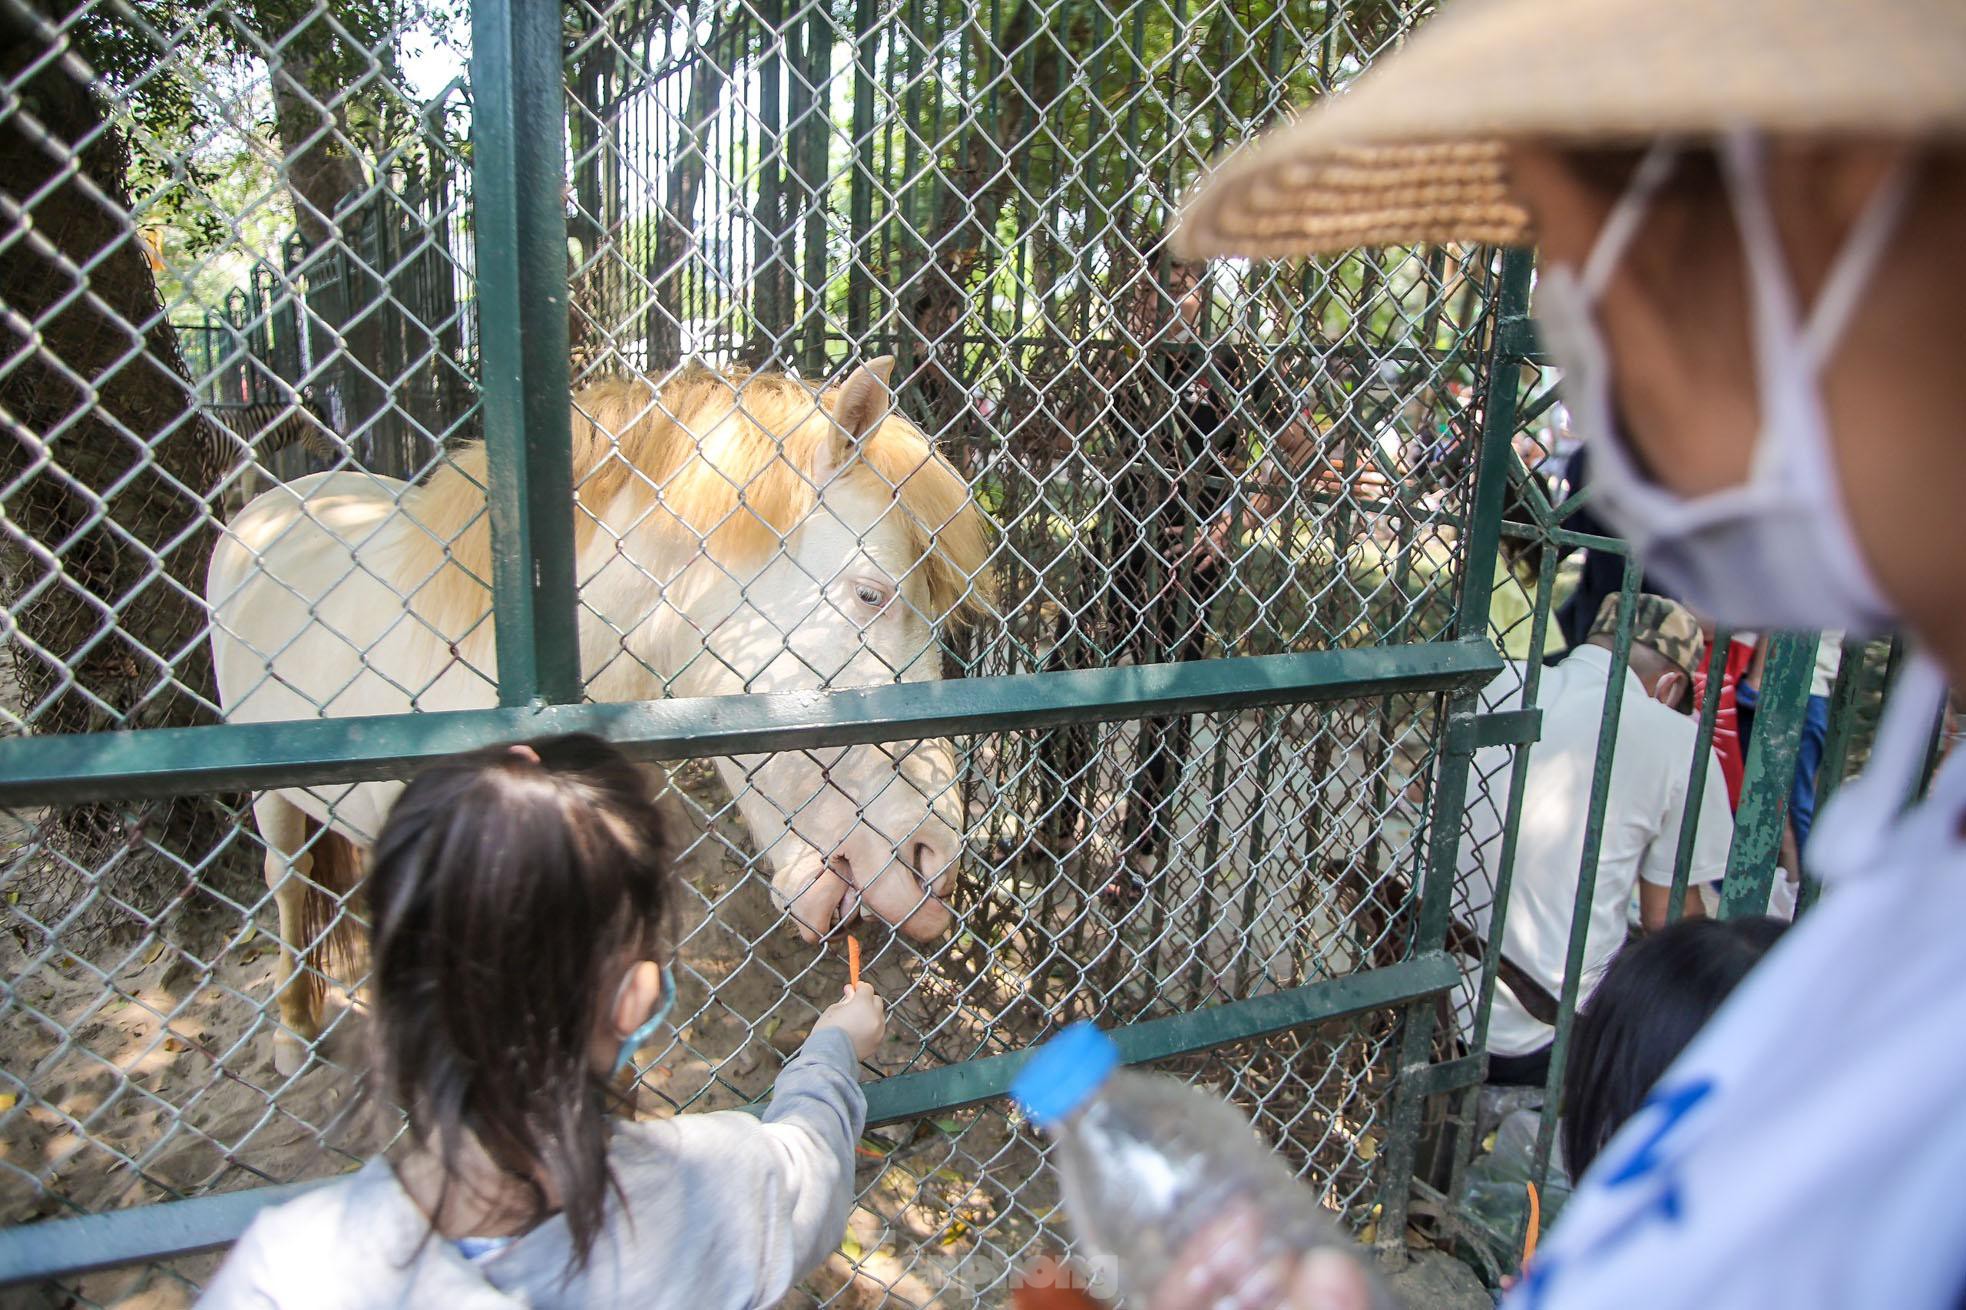 Ngàn người đổ về vườn thú Hà Nội trong ngày đầu nghỉ lễ - Ảnh 13.